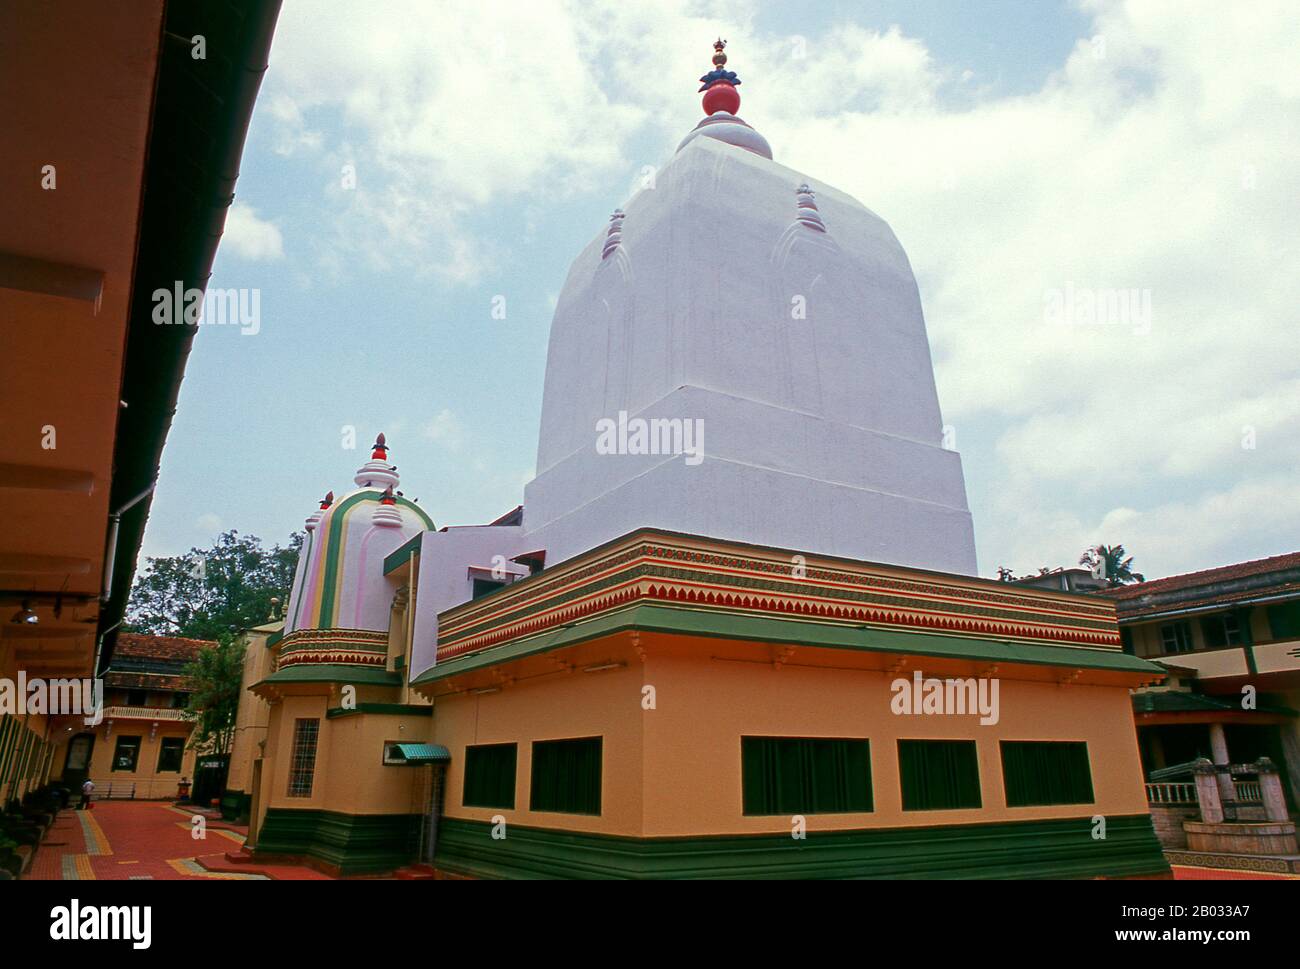 Der Shri Damodar-Tempel wurde ursprünglich im Jahre 1500 nach Christus erbaut und beherbergt die Hindu-Gottheit Shri Damodar, eine Inkarnation von Lord Shiva. Der heutige große Tempel stammt aus dem Jahr 1910. Stockfoto